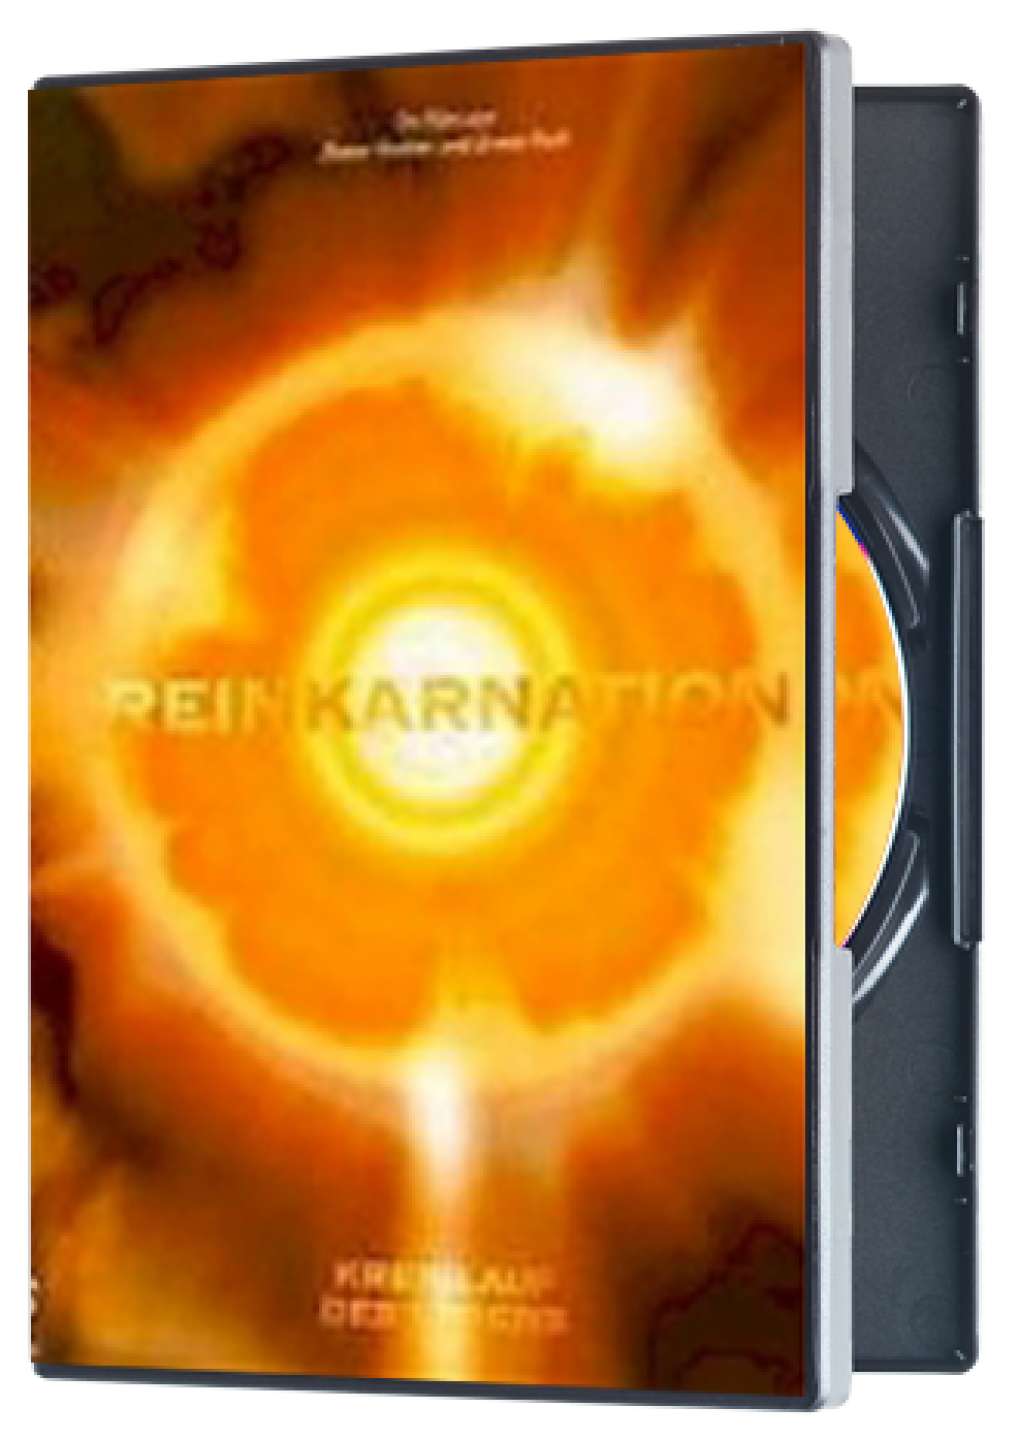 DVD "Reinkarnation - Kreislauf des Lebens"